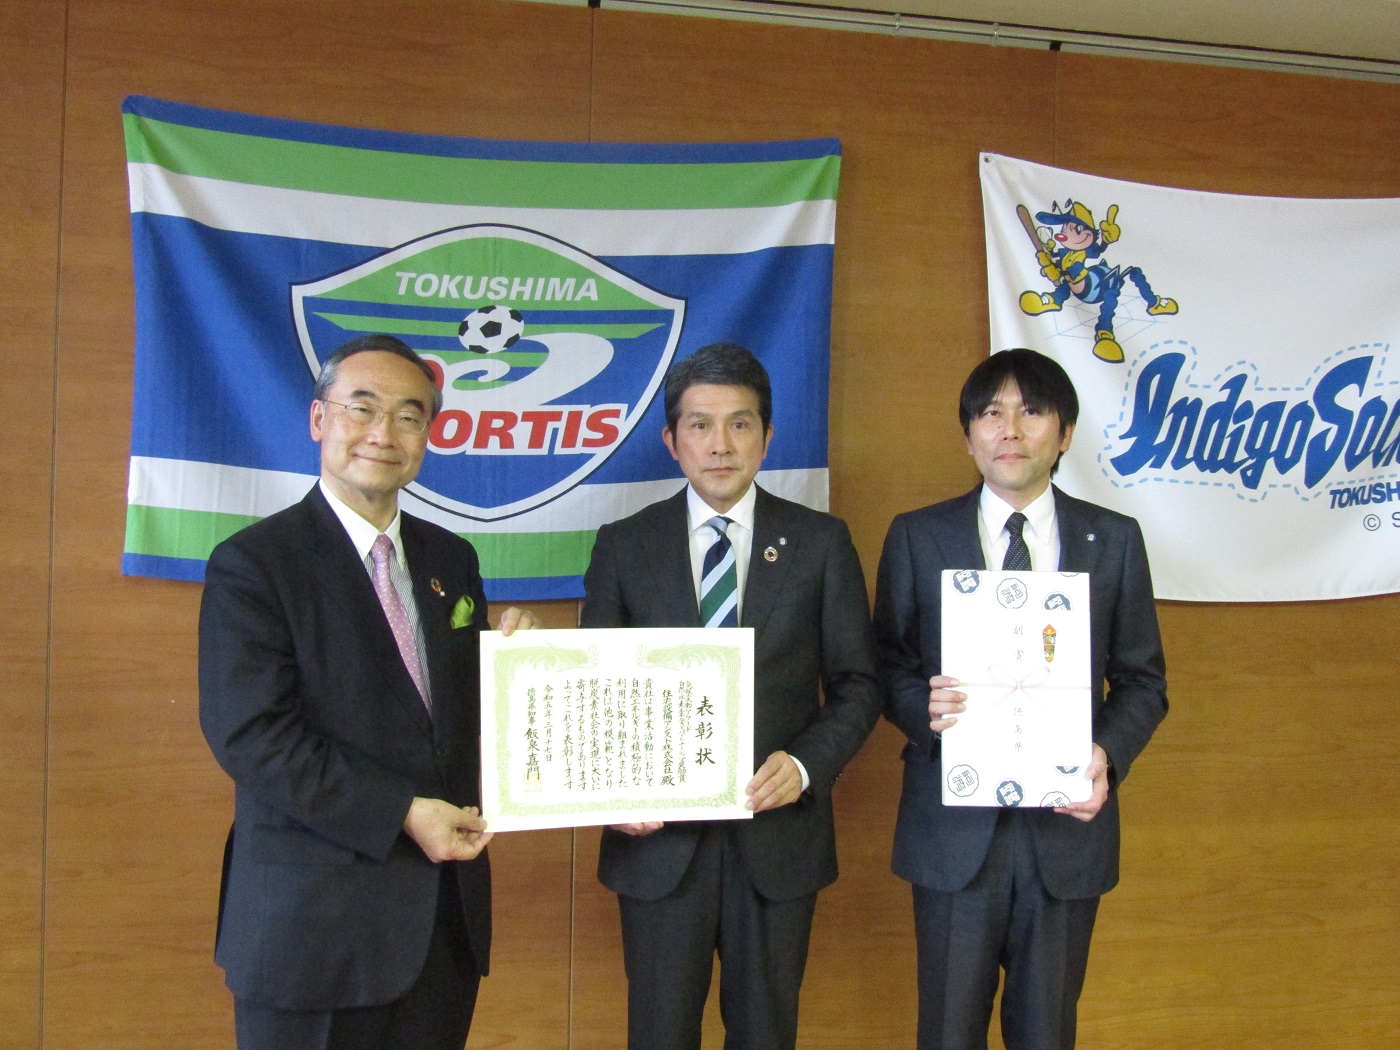 徳島県知事から表彰されました。 アイキャッチ画像